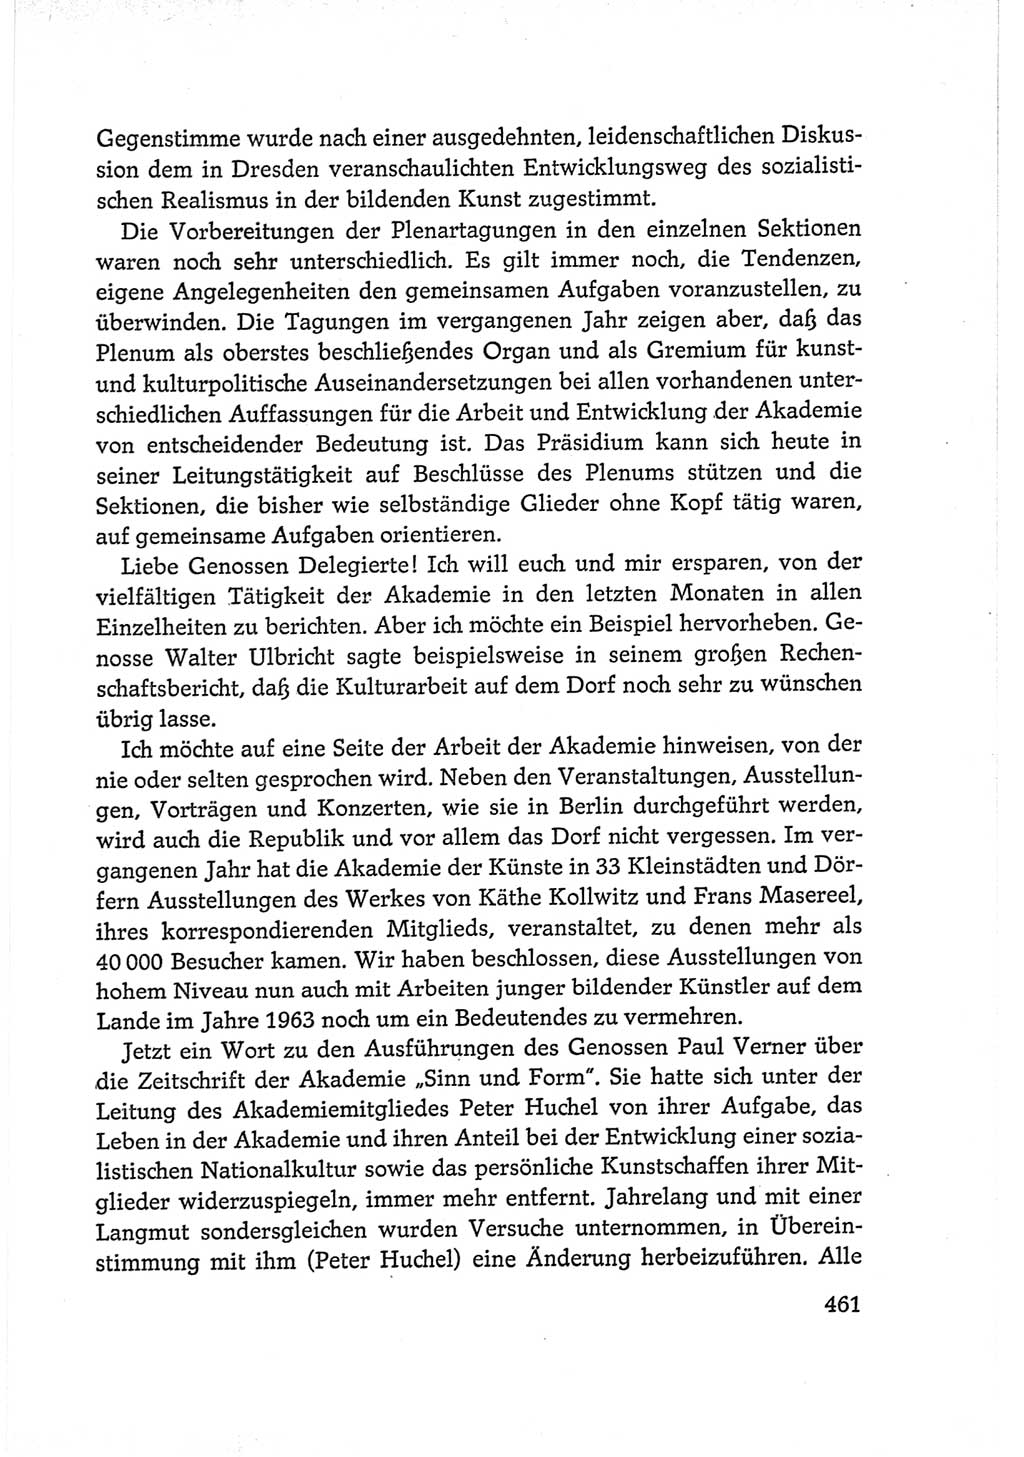 Protokoll der Verhandlungen des Ⅵ. Parteitages der Sozialistischen Einheitspartei Deutschlands (SED) [Deutsche Demokratische Republik (DDR)] 1963, Band Ⅰ, Seite 461 (Prot. Verh. Ⅵ. PT SED DDR 1963, Bd. Ⅰ, S. 461)